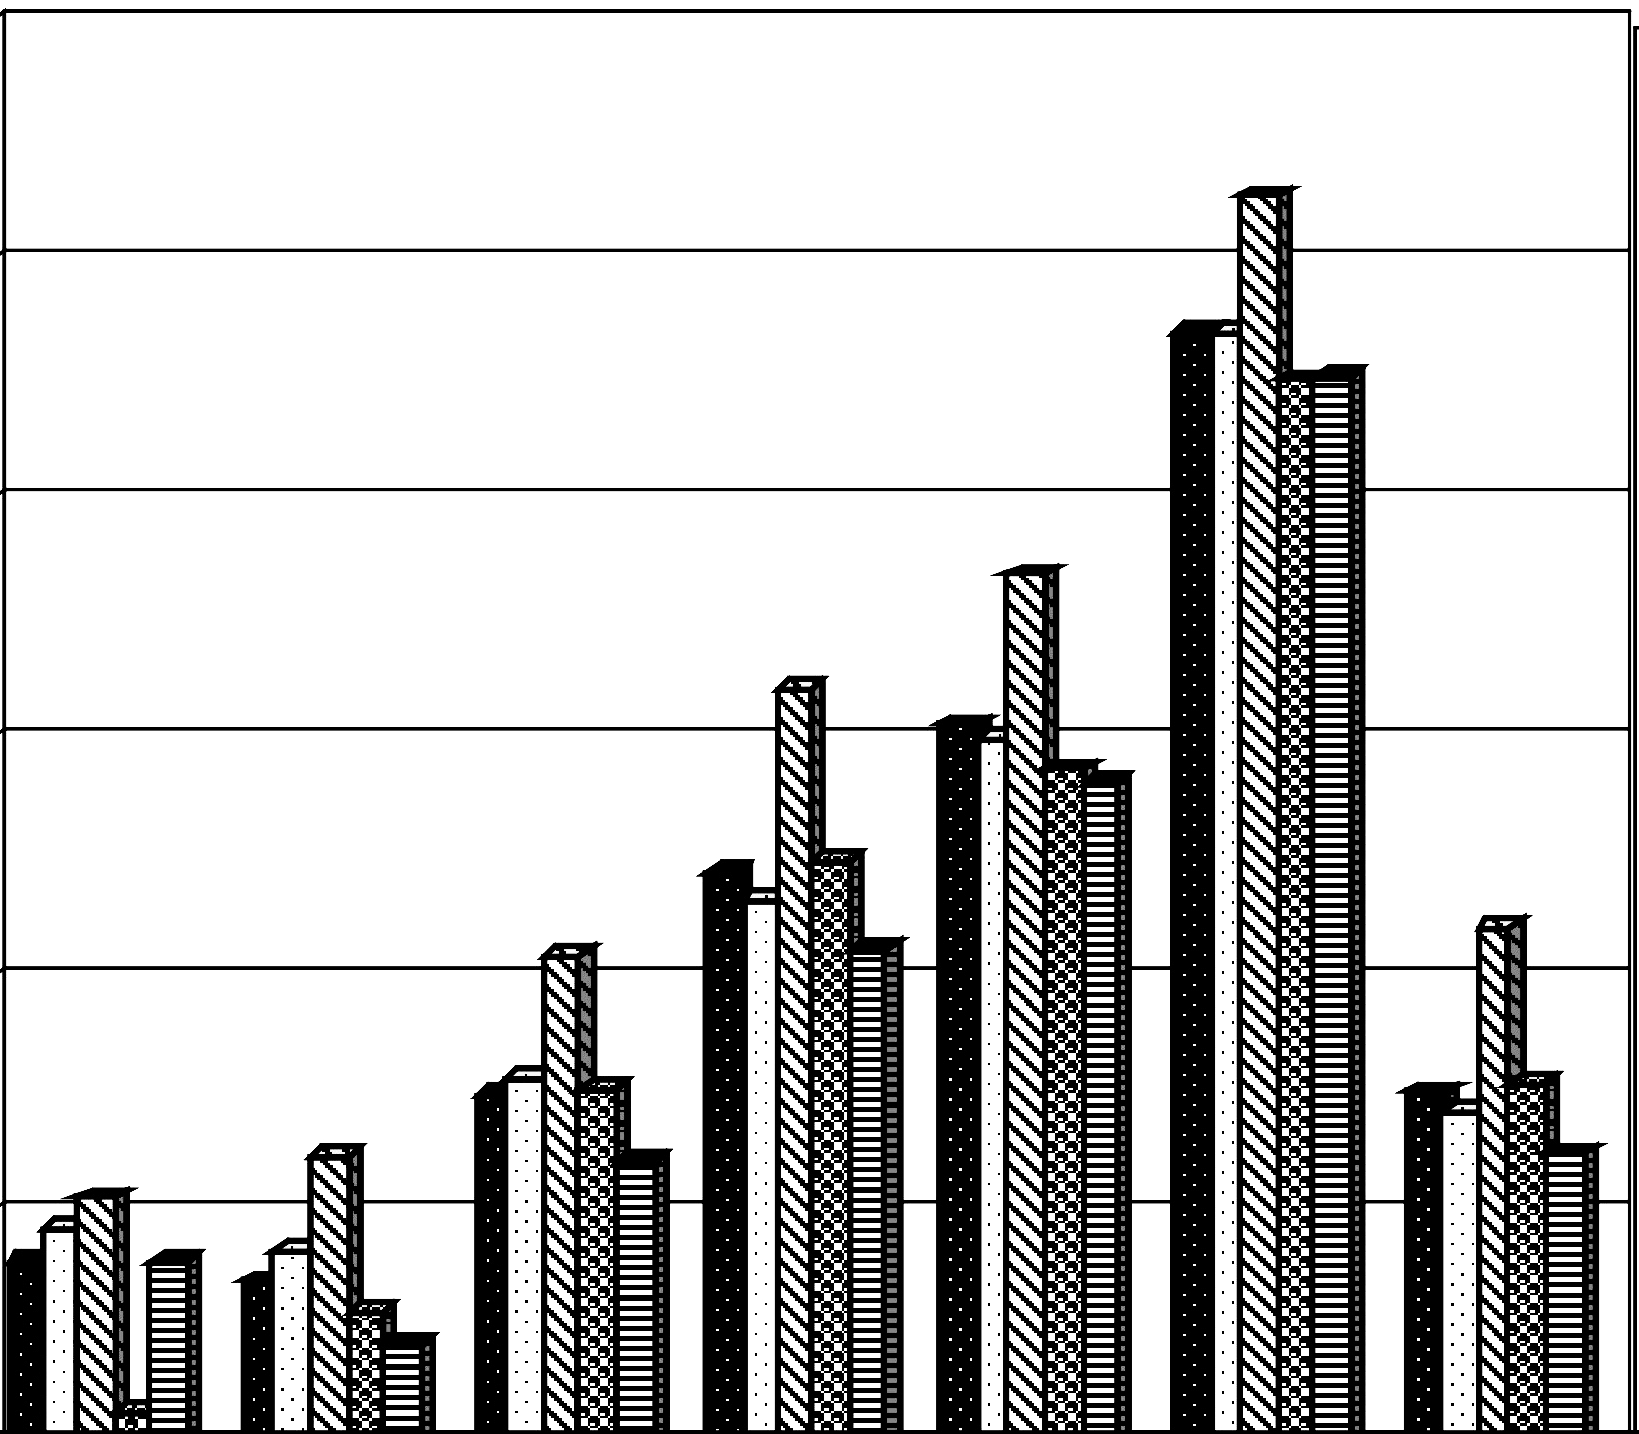 Zró nicowanie regionalne kosztów zakupu miêsa wieprzowego w Polsce w latach 2003-2005 165 12 11 [z³/kg] Makroregion pó³nocny Makroregion œrodkowo-wschodni Makroregion po³udniowo-wschodni Makroregion